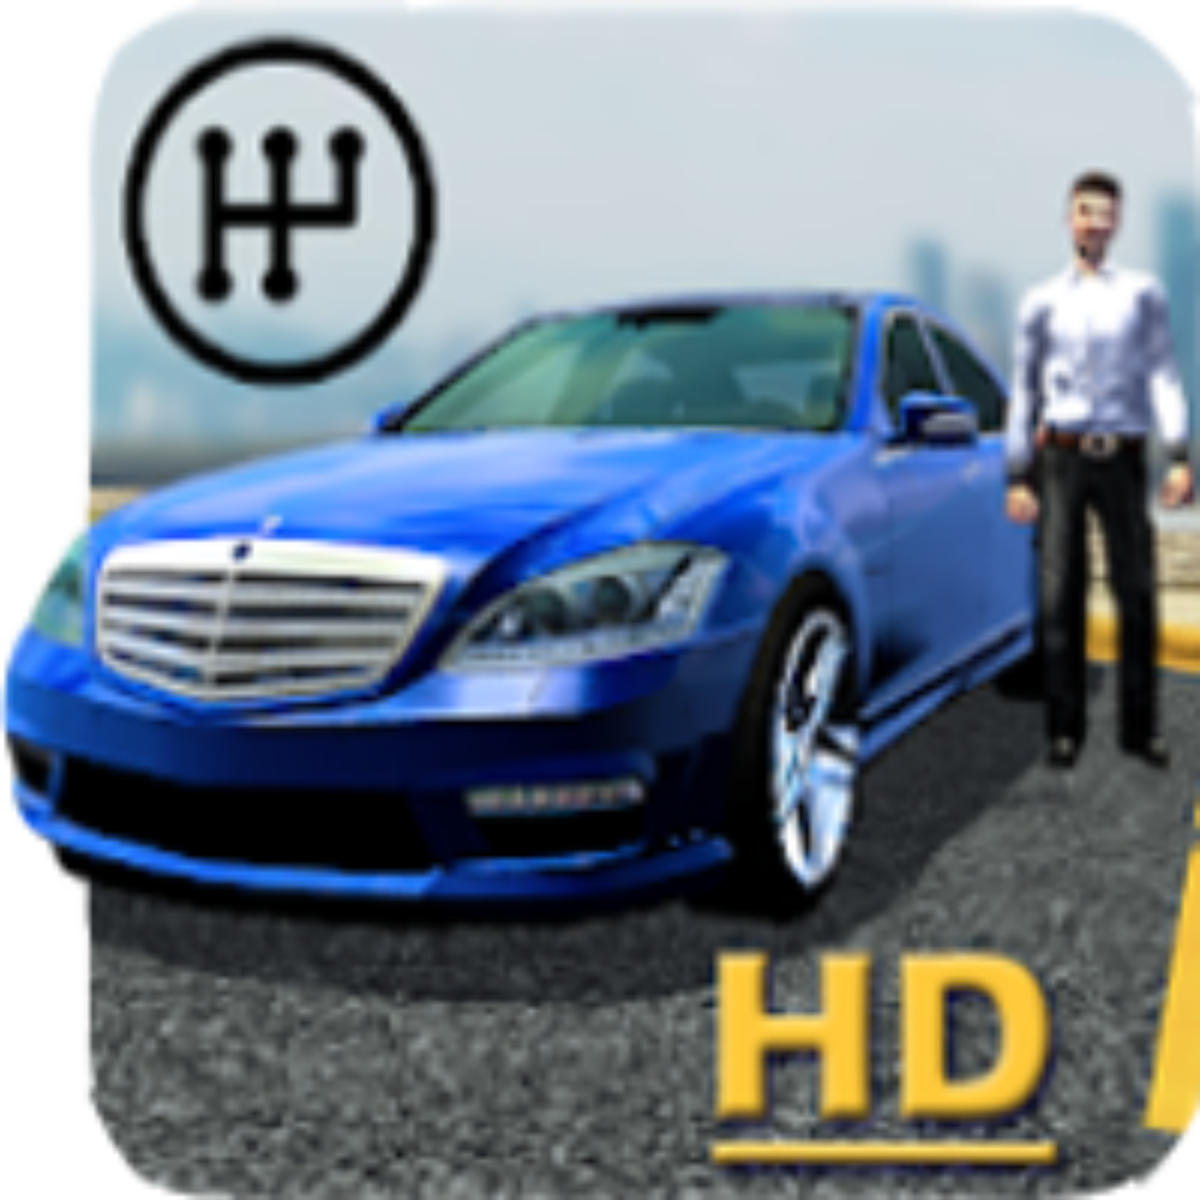 Car Parking Multiplayer APK MOD v4.8.14.8 (Carros & Dinheiro